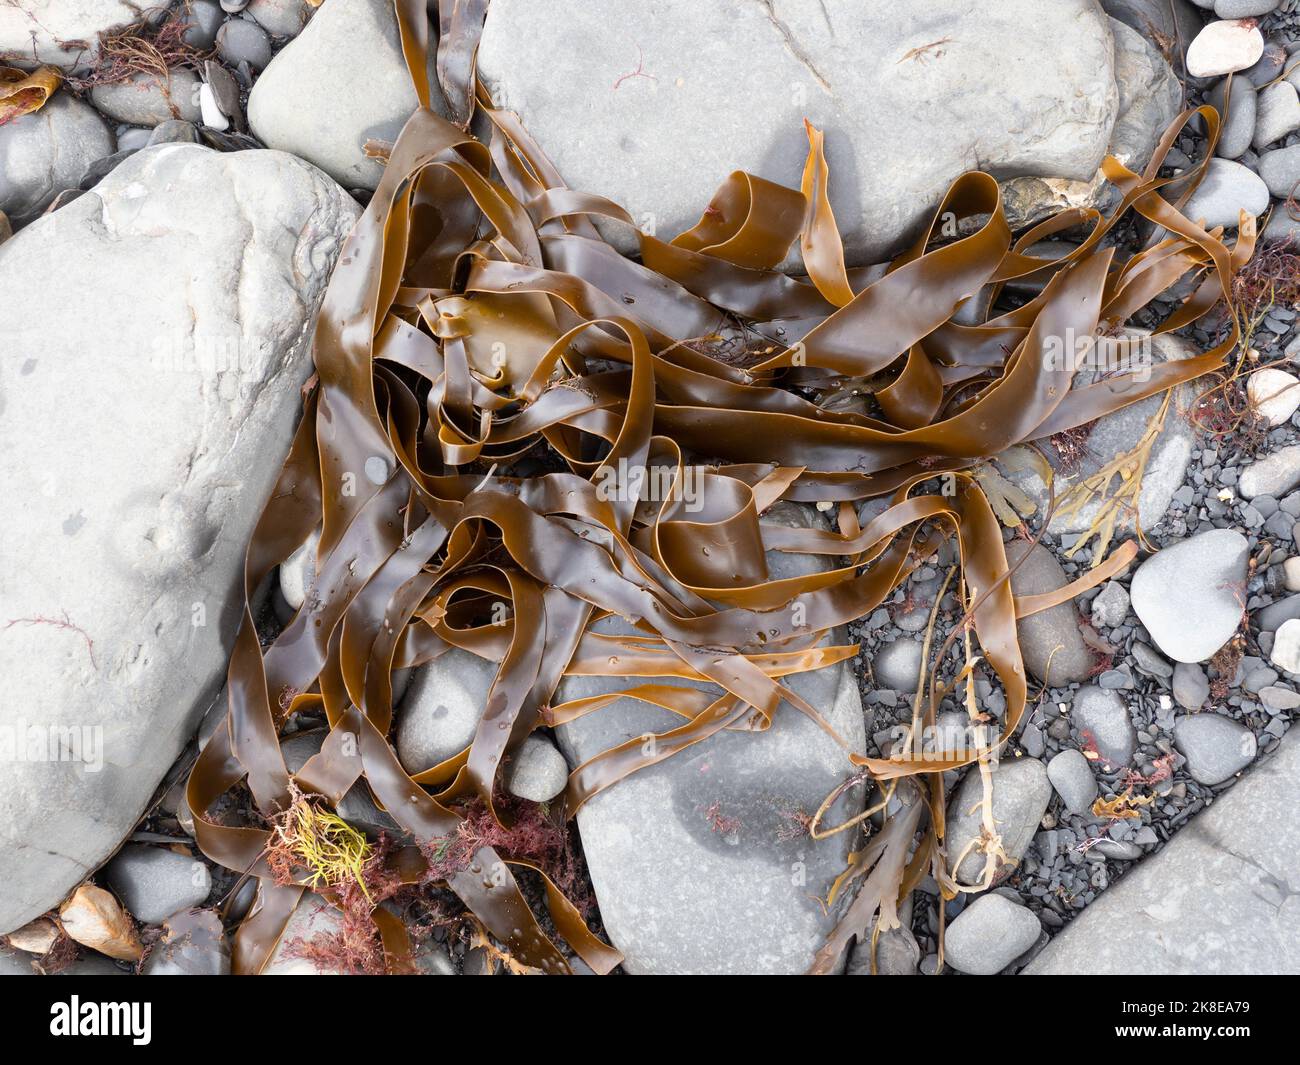 Wrack e alghe sulla Tildeline Kimmeridge Bay, dorset Foto Stock